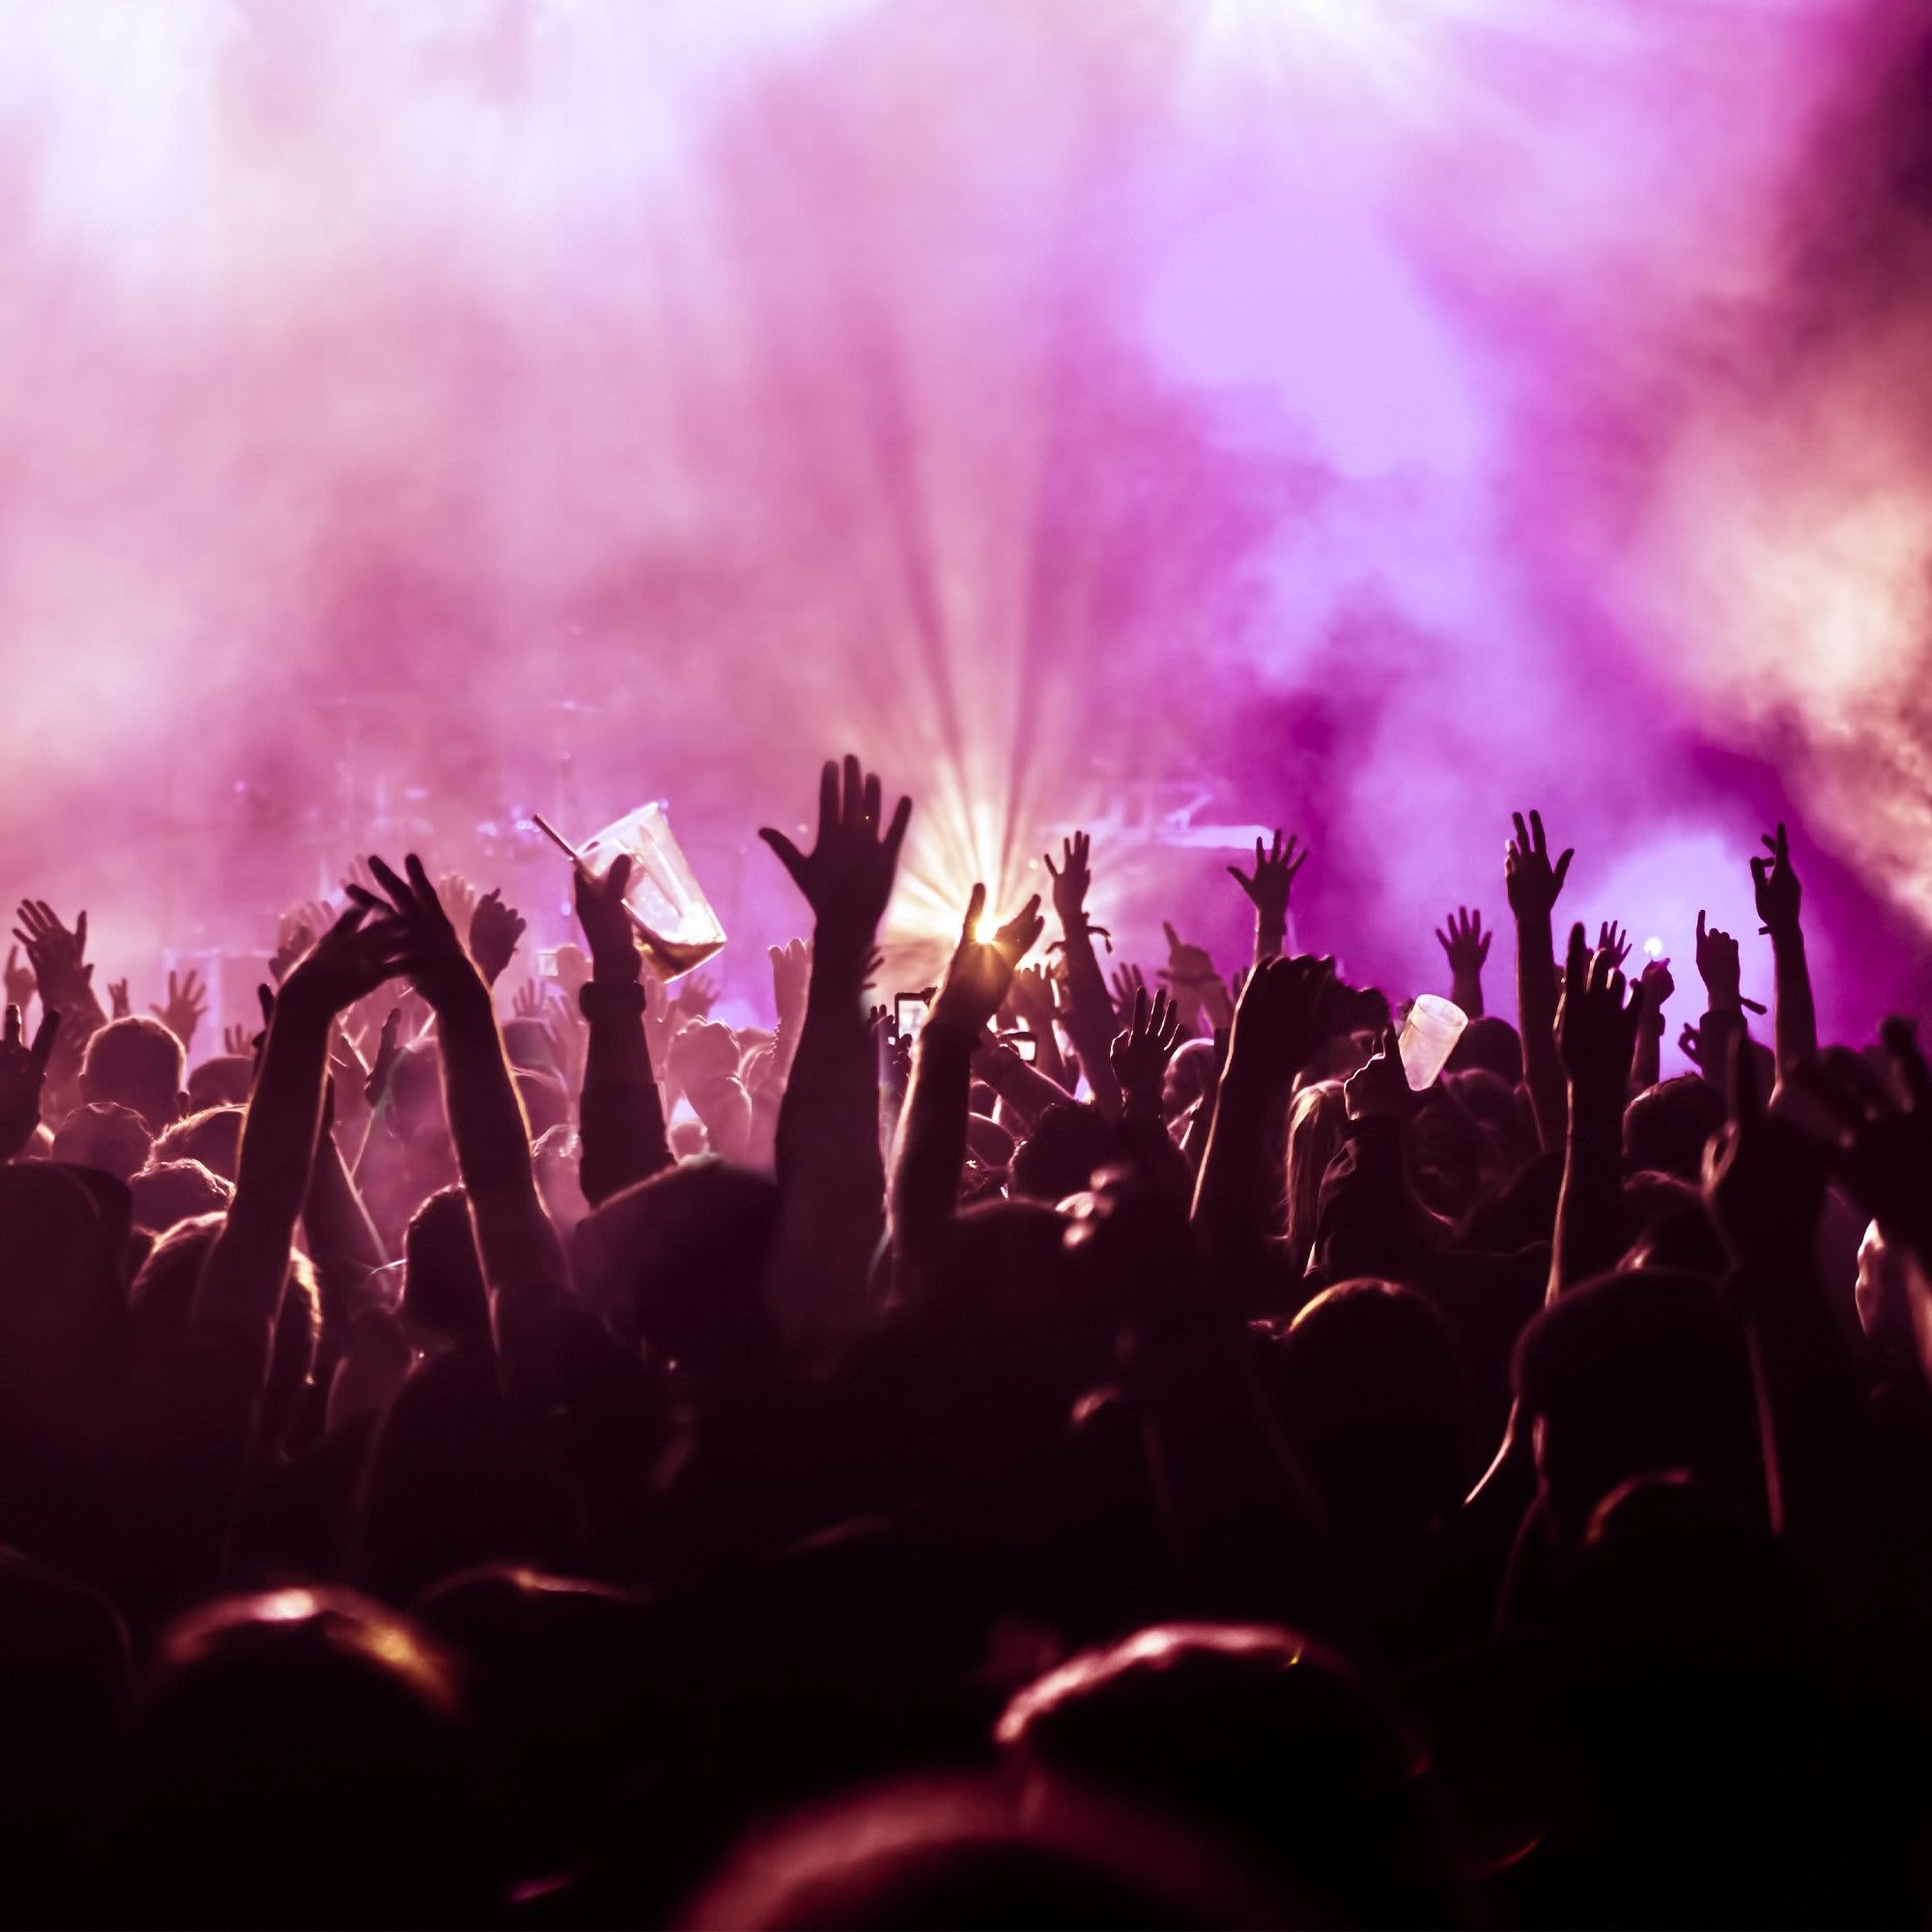 Descubre los mejores festivales de música en Madrid que habrá este año. ¡Consigue tu entrada en Fever antes de que sea tarde!